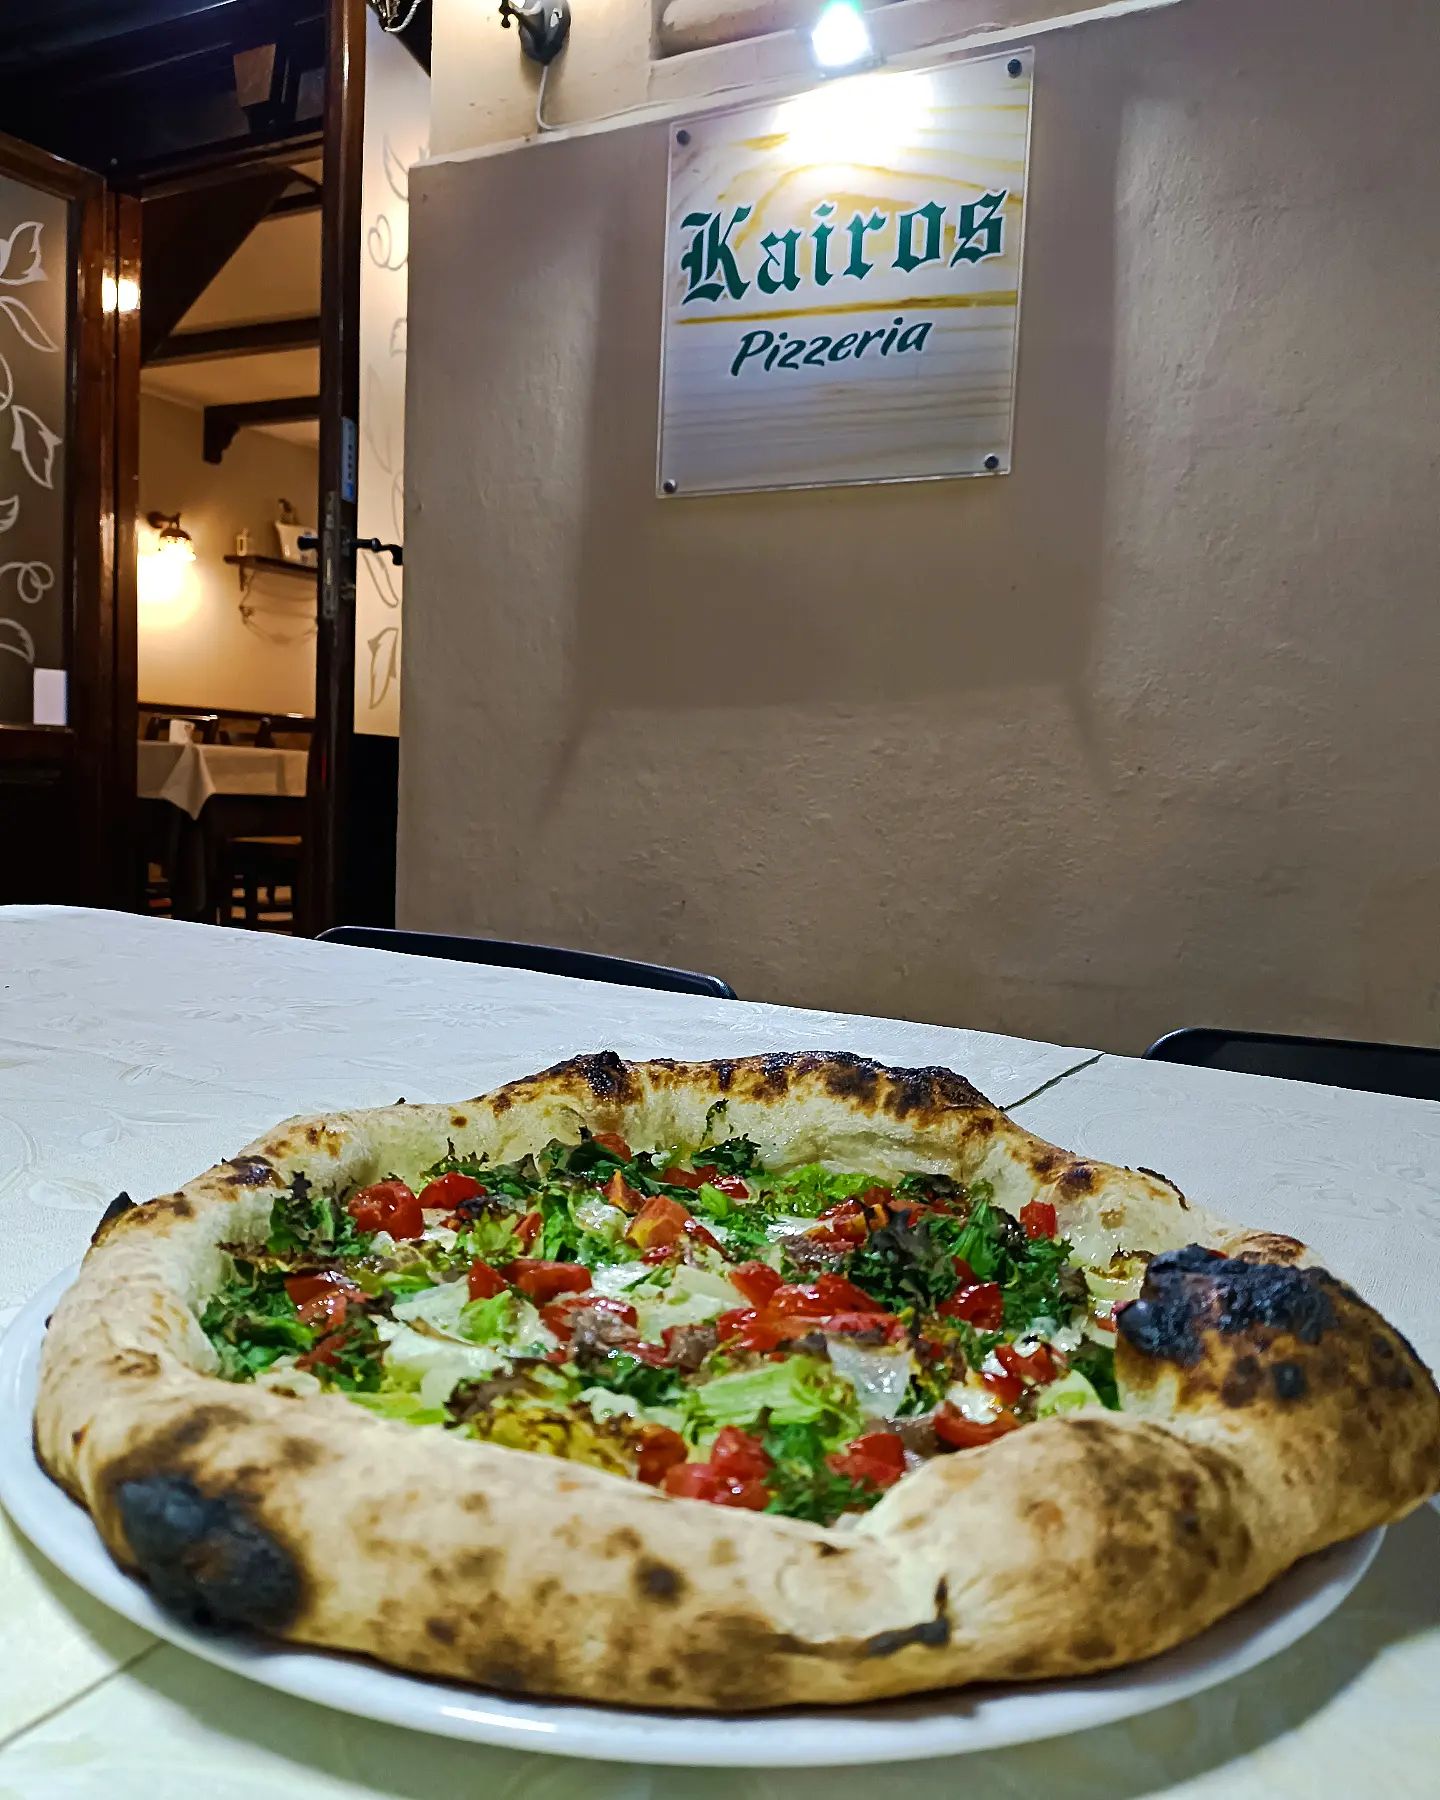 Le migliori pizzerie a Messina, Pizzerie dove mangiare a Messina, Pizzeria Kairos, Esterni, Locale, Pizza